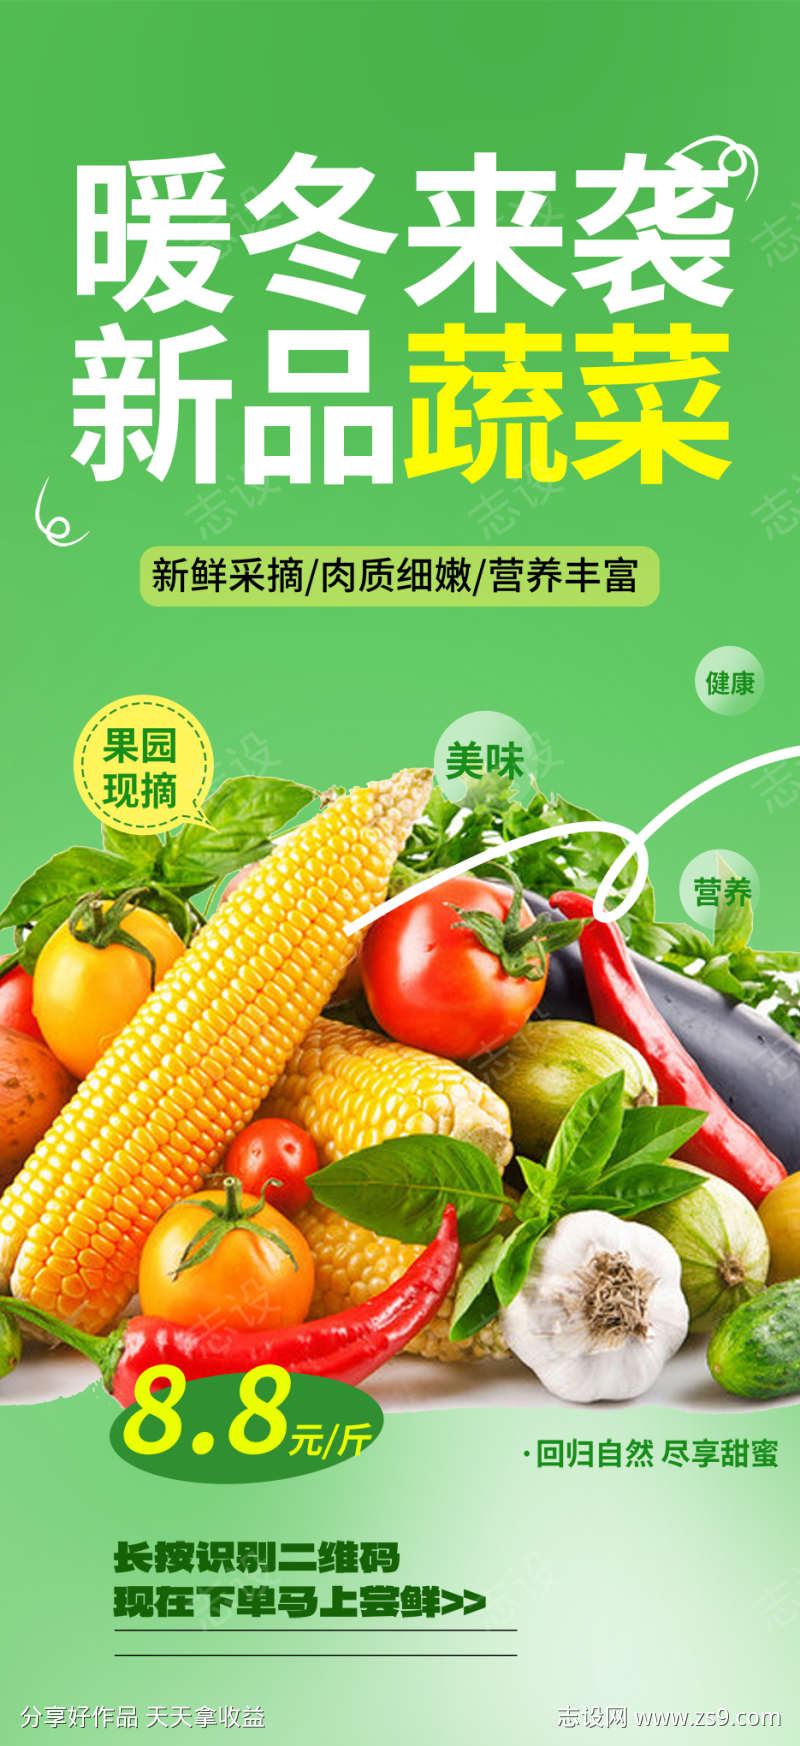 微商新鲜蔬菜美食促销活动海报